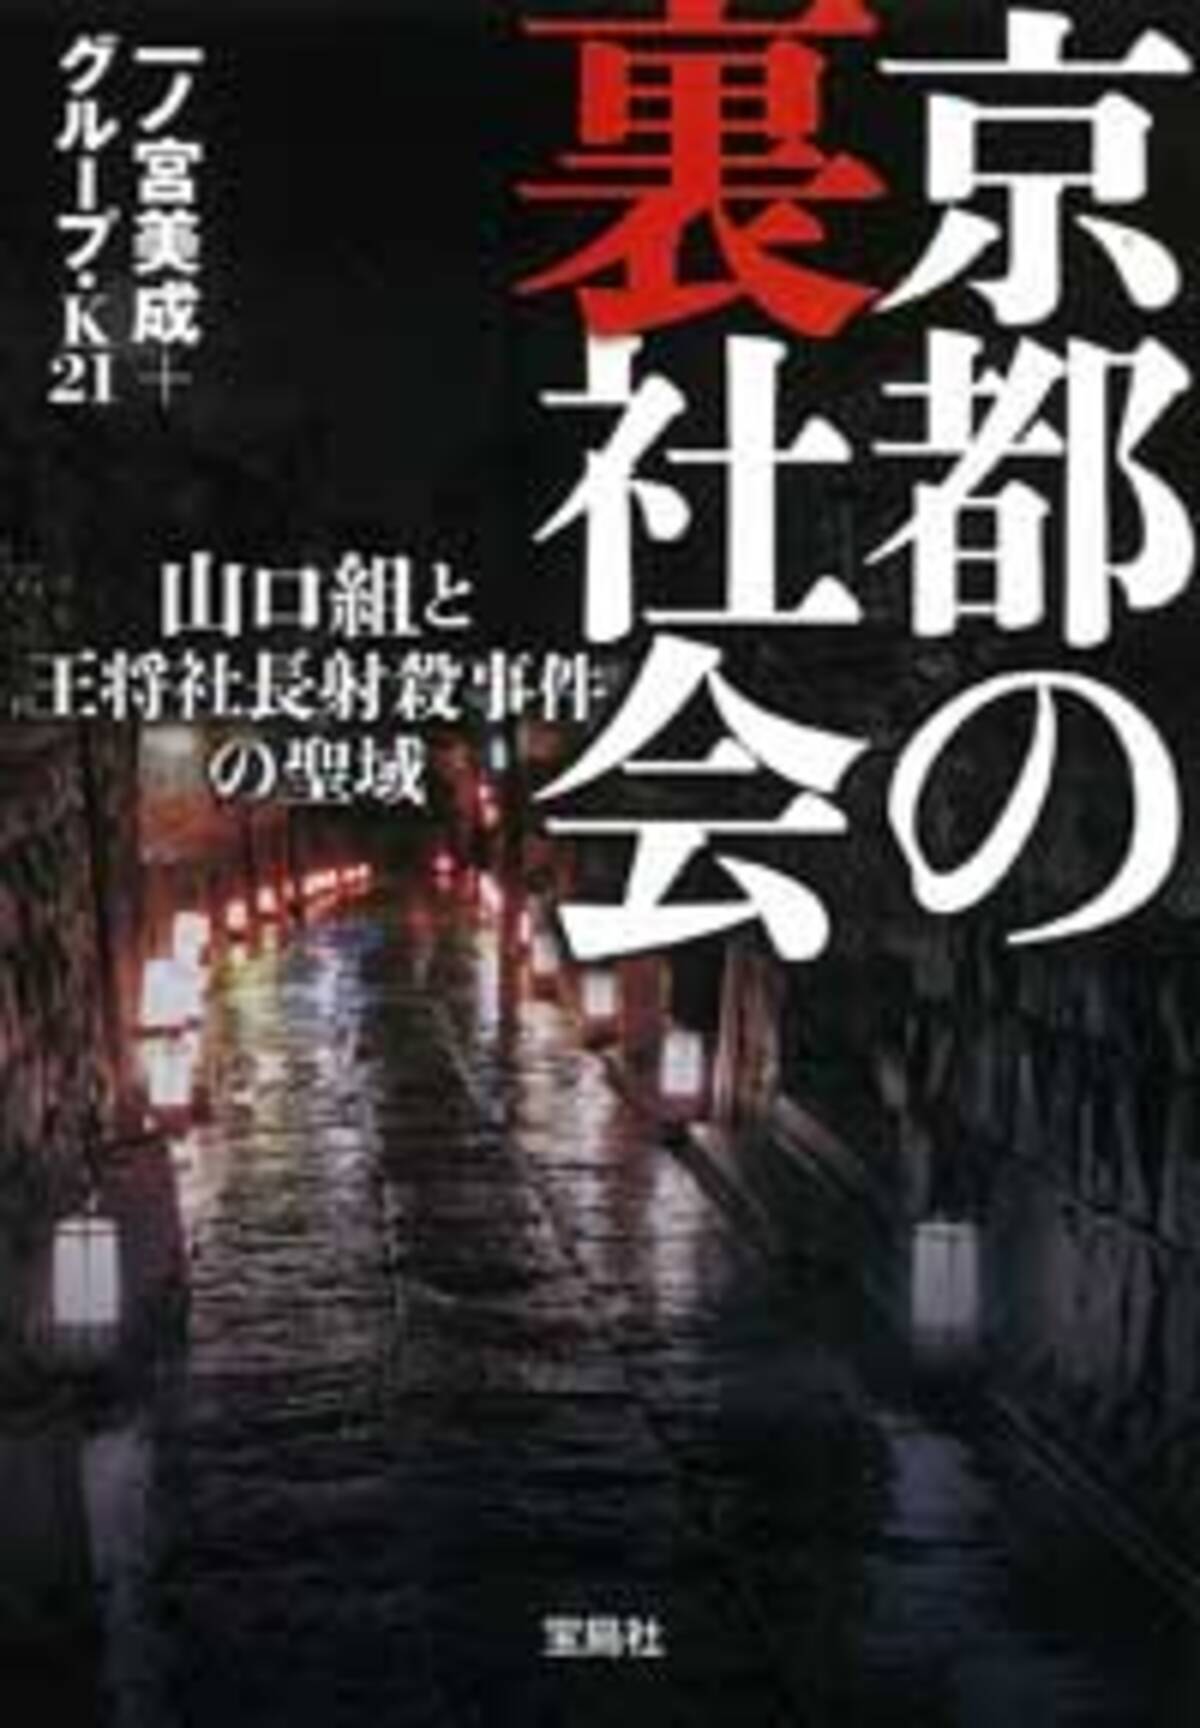 会津小鉄会の内部抗争激化で タレントの生命危機 も ヤクザとの交際を立ち切れない芸能界の闇 17年2月13日 エキサイトニュース